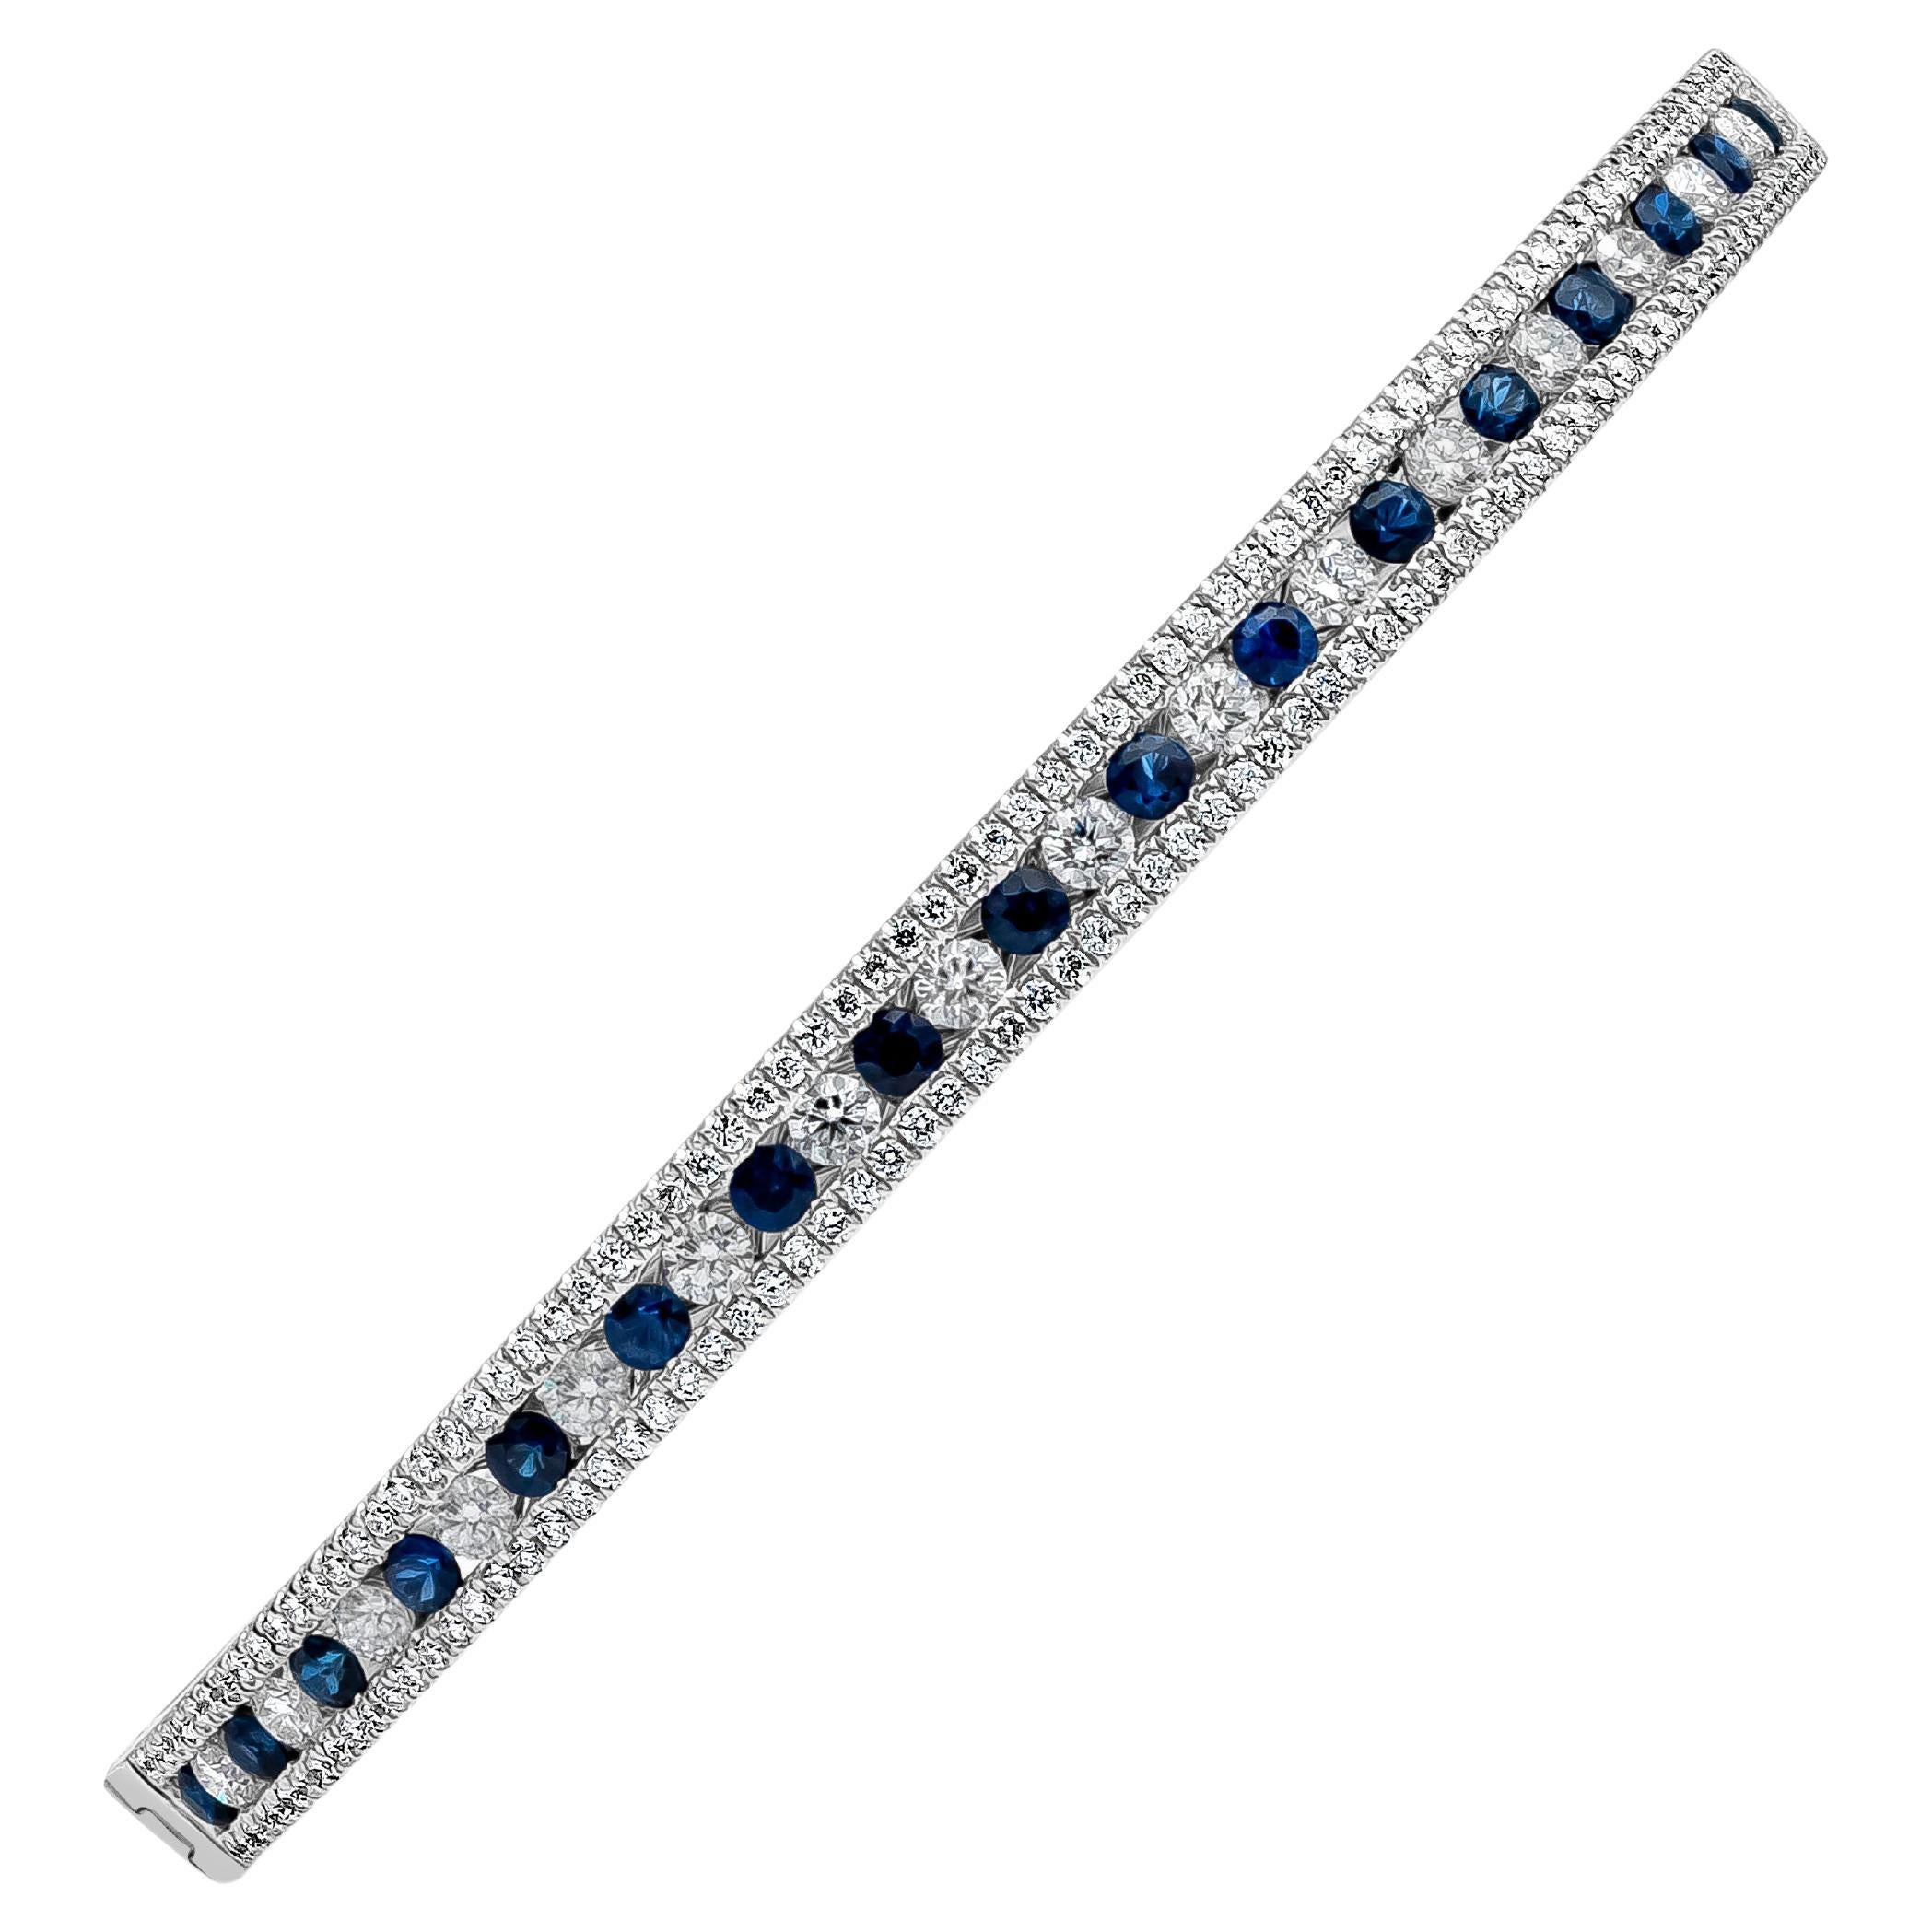 Dieses schicke Schmuckstück besteht aus einem Armreif mit abwechselnd runden blauen Saphiren im Brillantschliff und Diamanten. Der blaue Saphir wiegt insgesamt 1,12 Karat und die Diamanten wiegen insgesamt 1,51 Karat, F-G in Farbe und VS-SI in